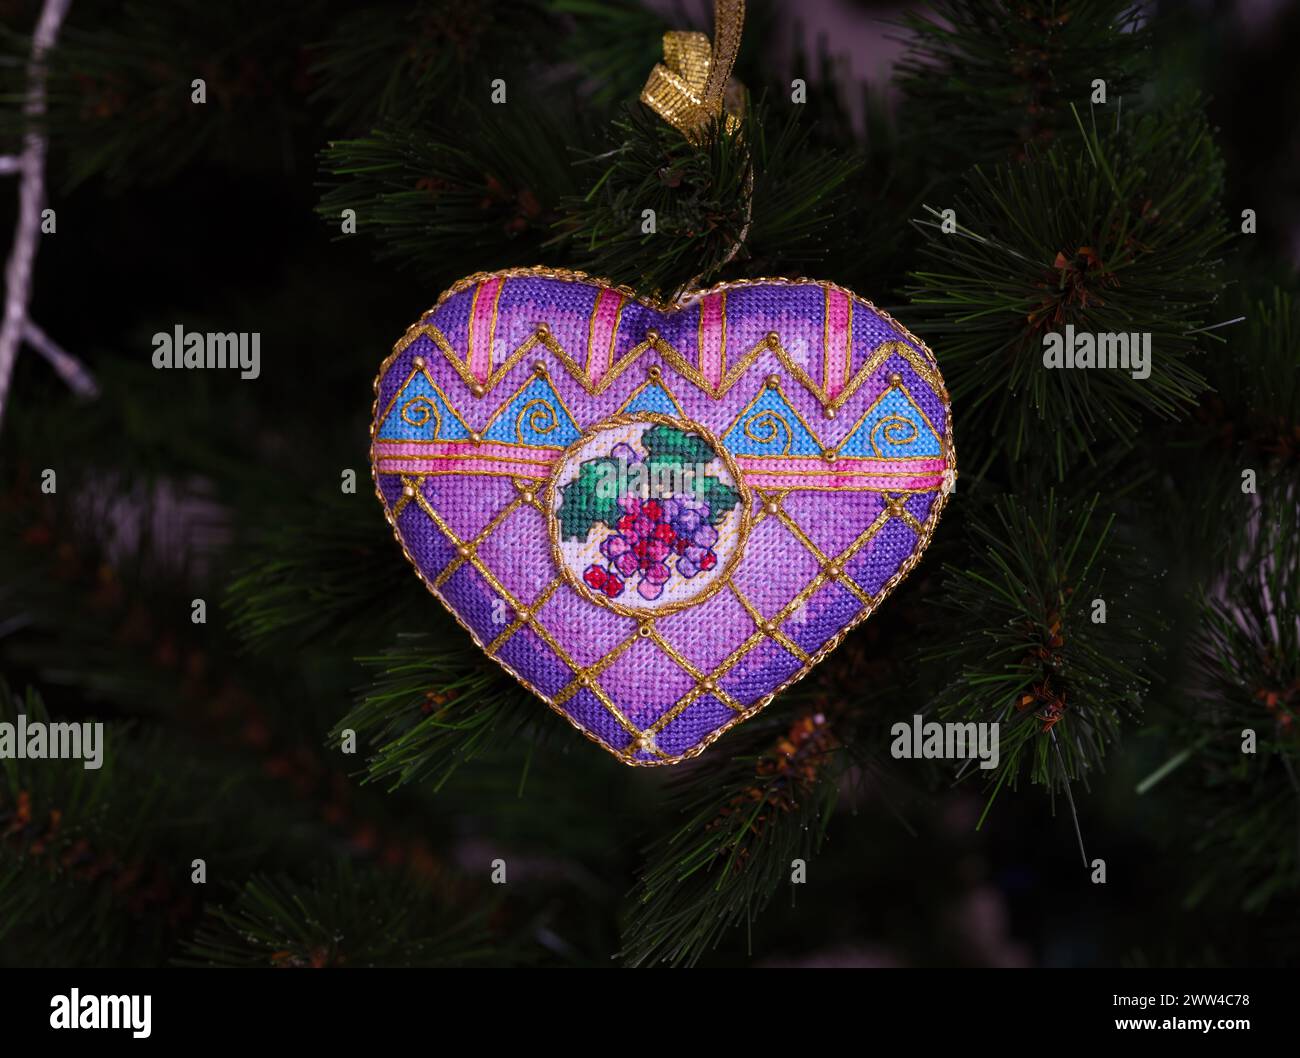 Ein kreuzgenähtes zeitloses Weihnachtsschmuck auf einem Weihnachtsbaum. Dieses lila Weihnachtsschmuck in Herzform mit aufgestickten Trauben und m Stockfoto